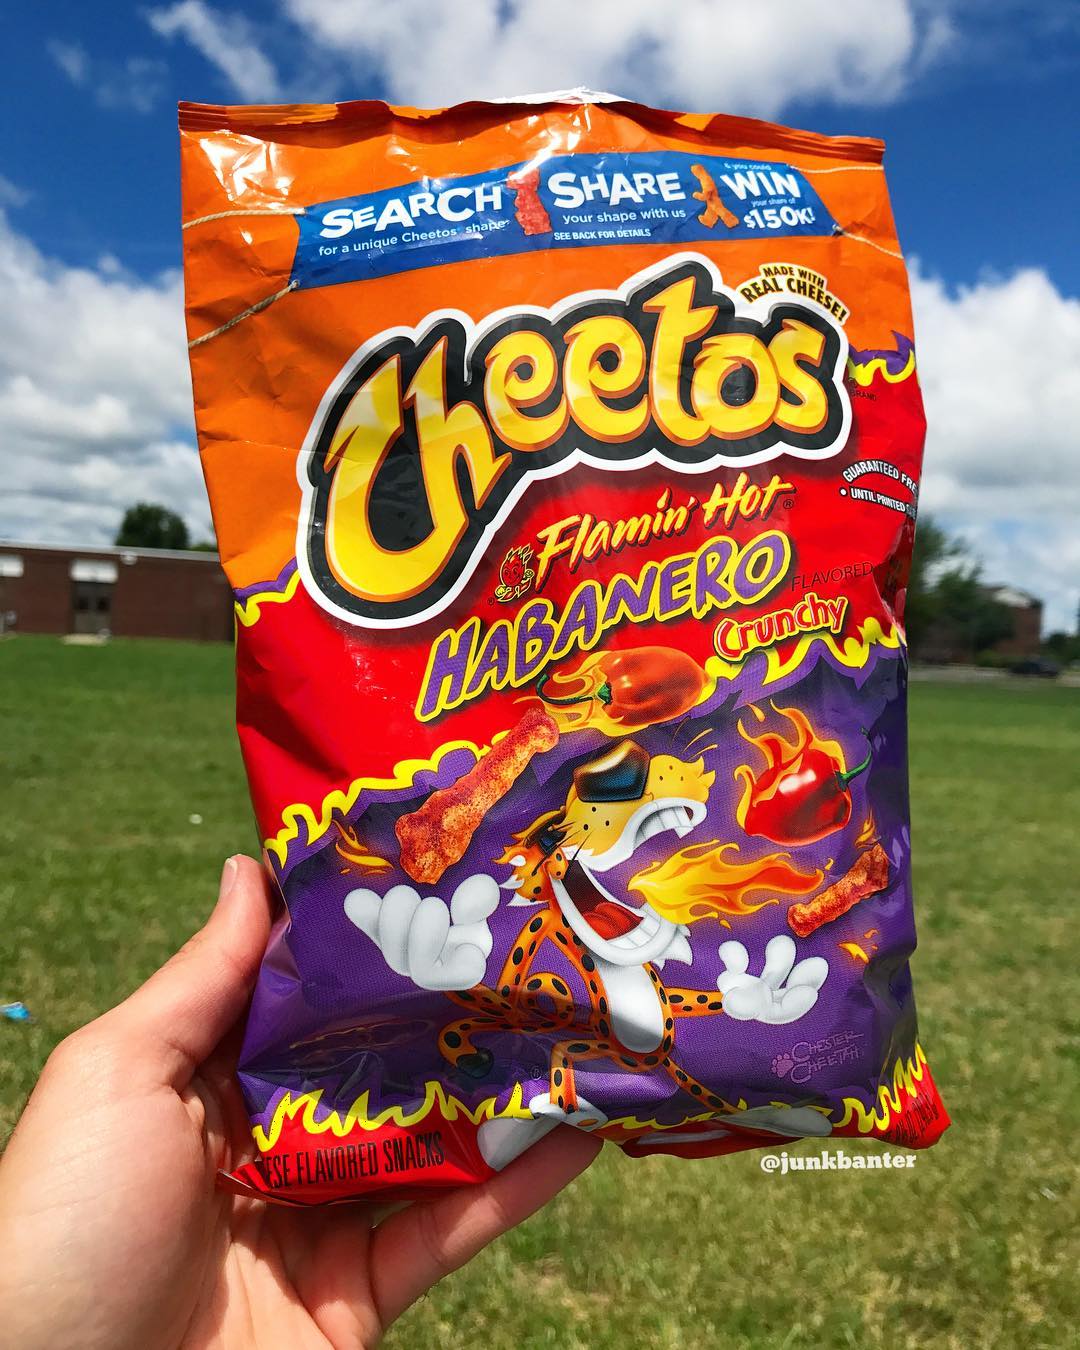 Cheetos Flamin' Hot Habanero.